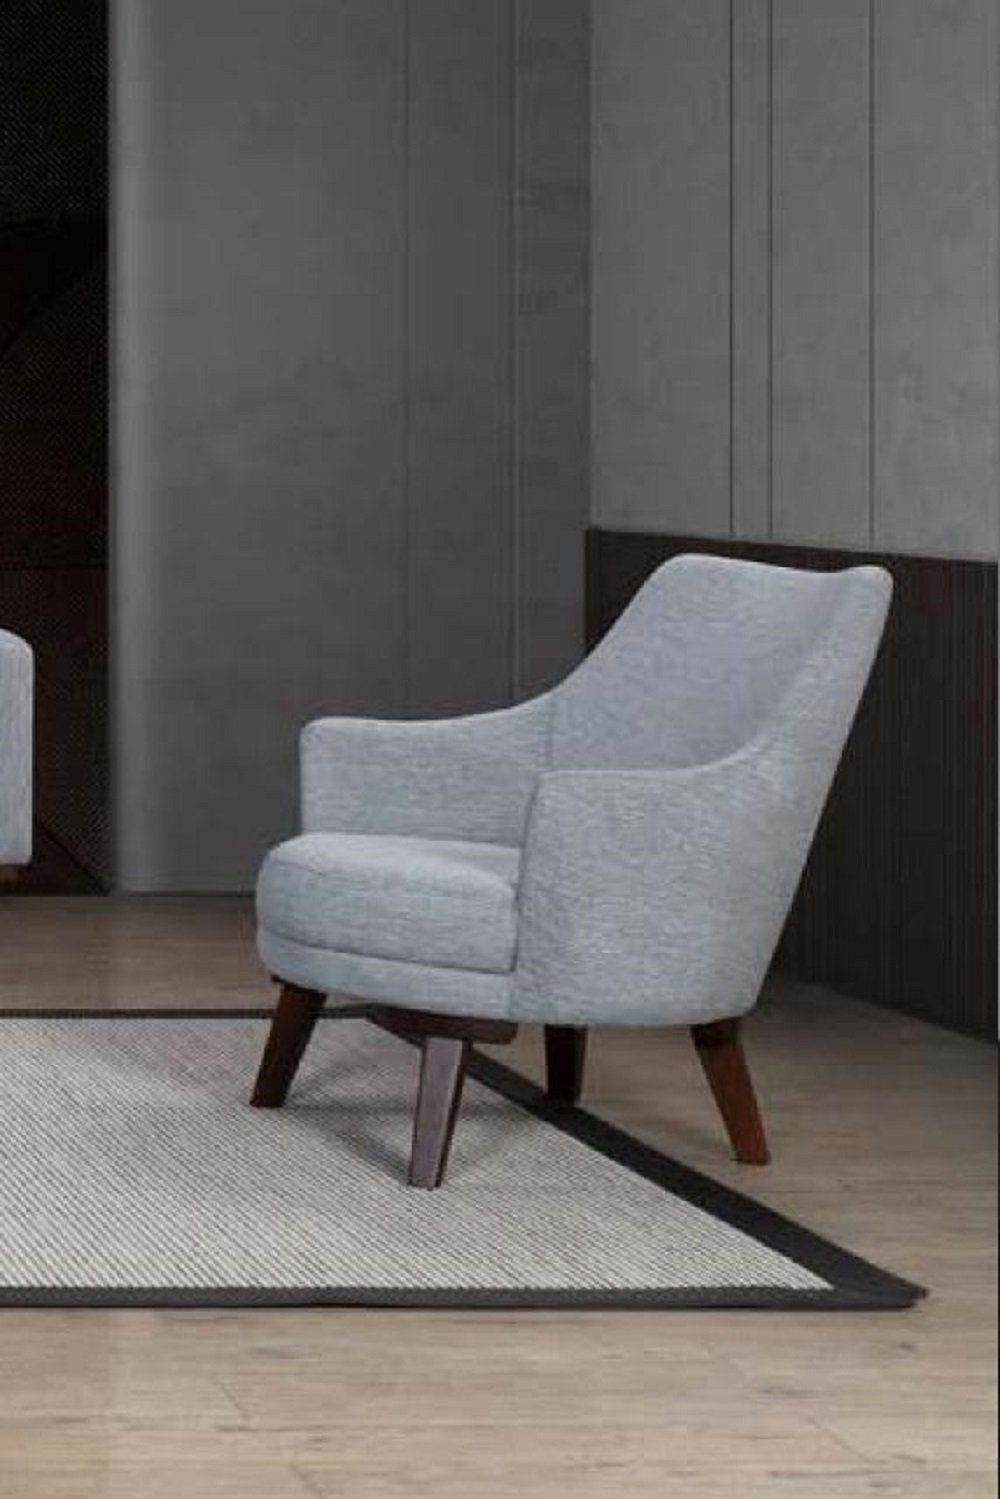 JVmoebel Sessel Designer Sessel 1 Sitzer Grau Stoff Textil Luxus Möbel Einsitzer Neu